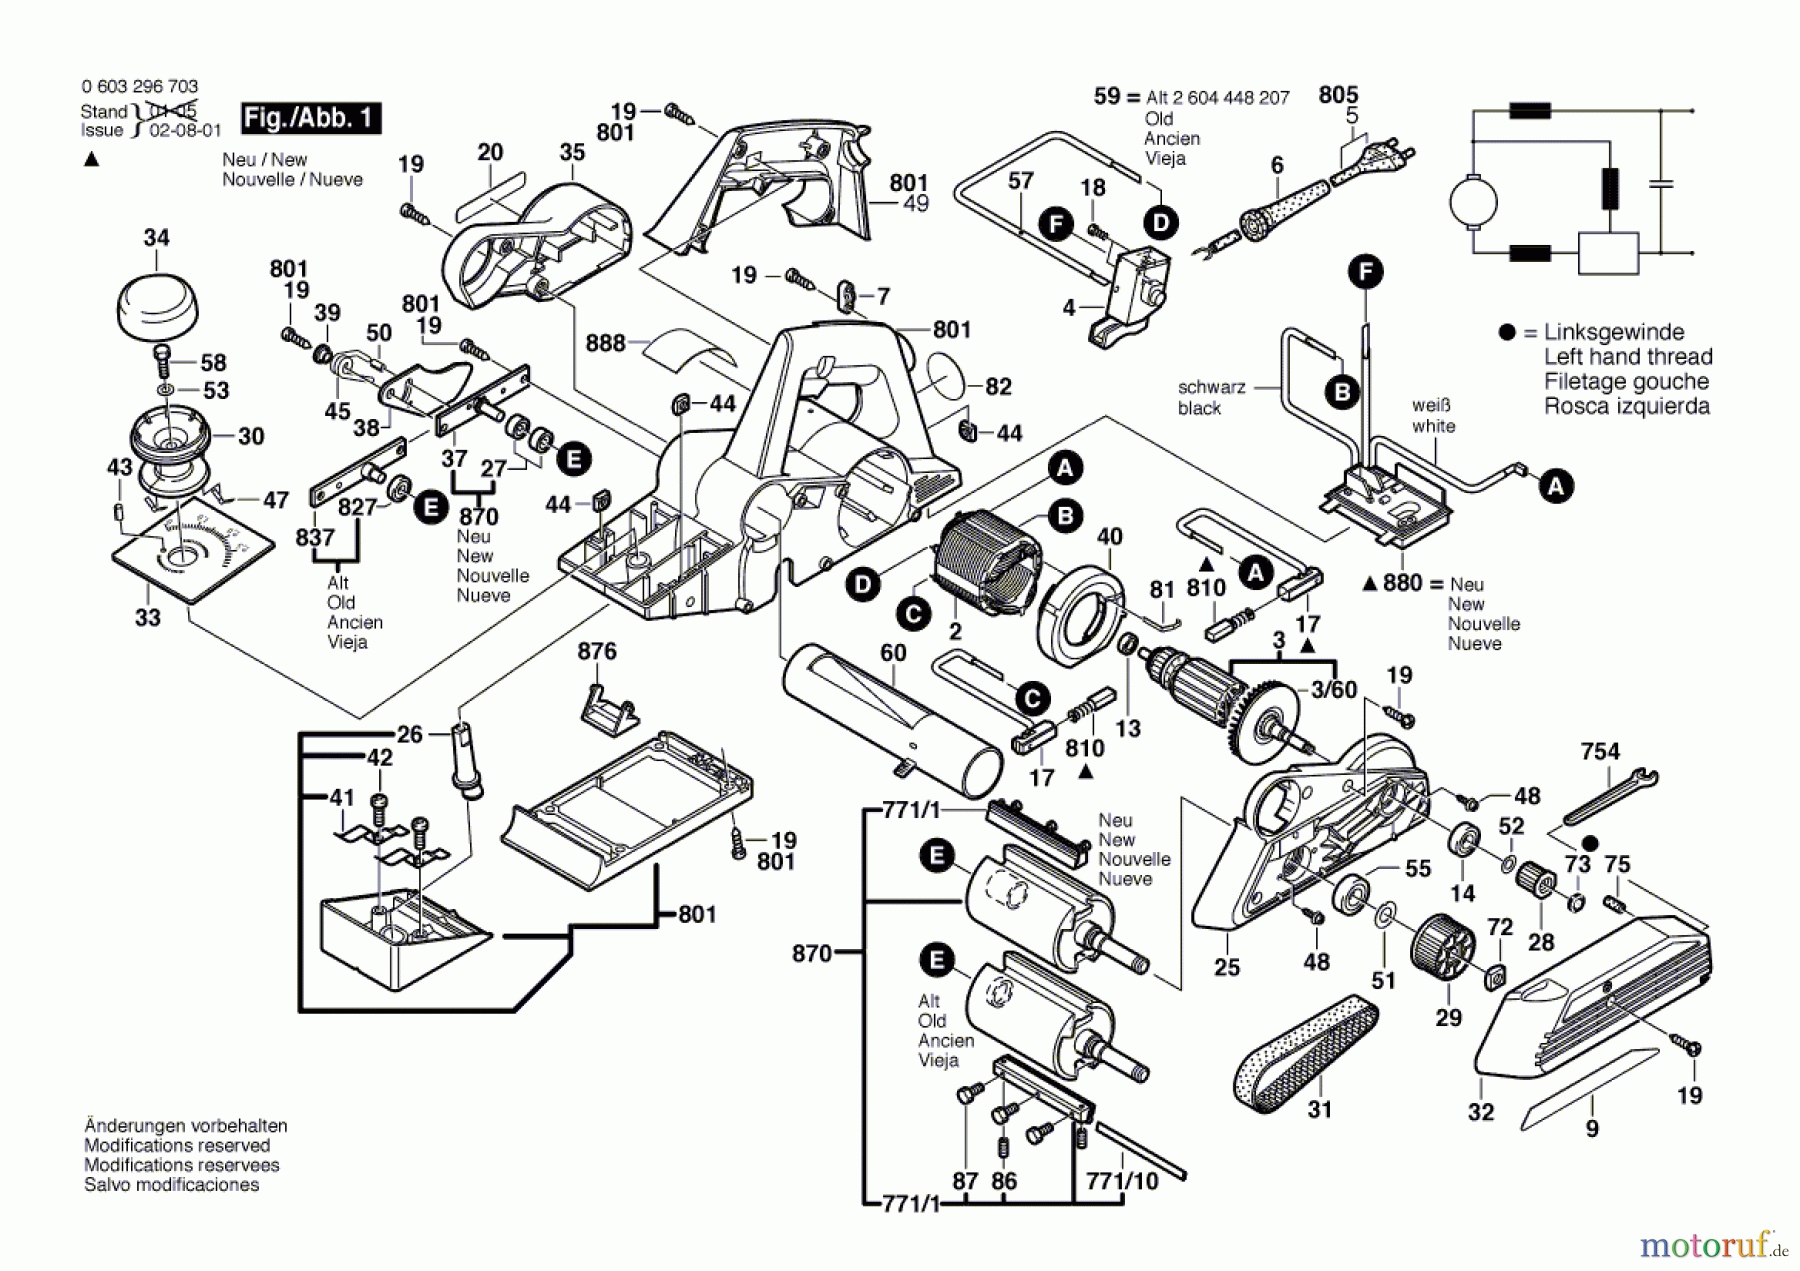  Bosch Werkzeug Handhobel PHO 35-82 C Seite 1